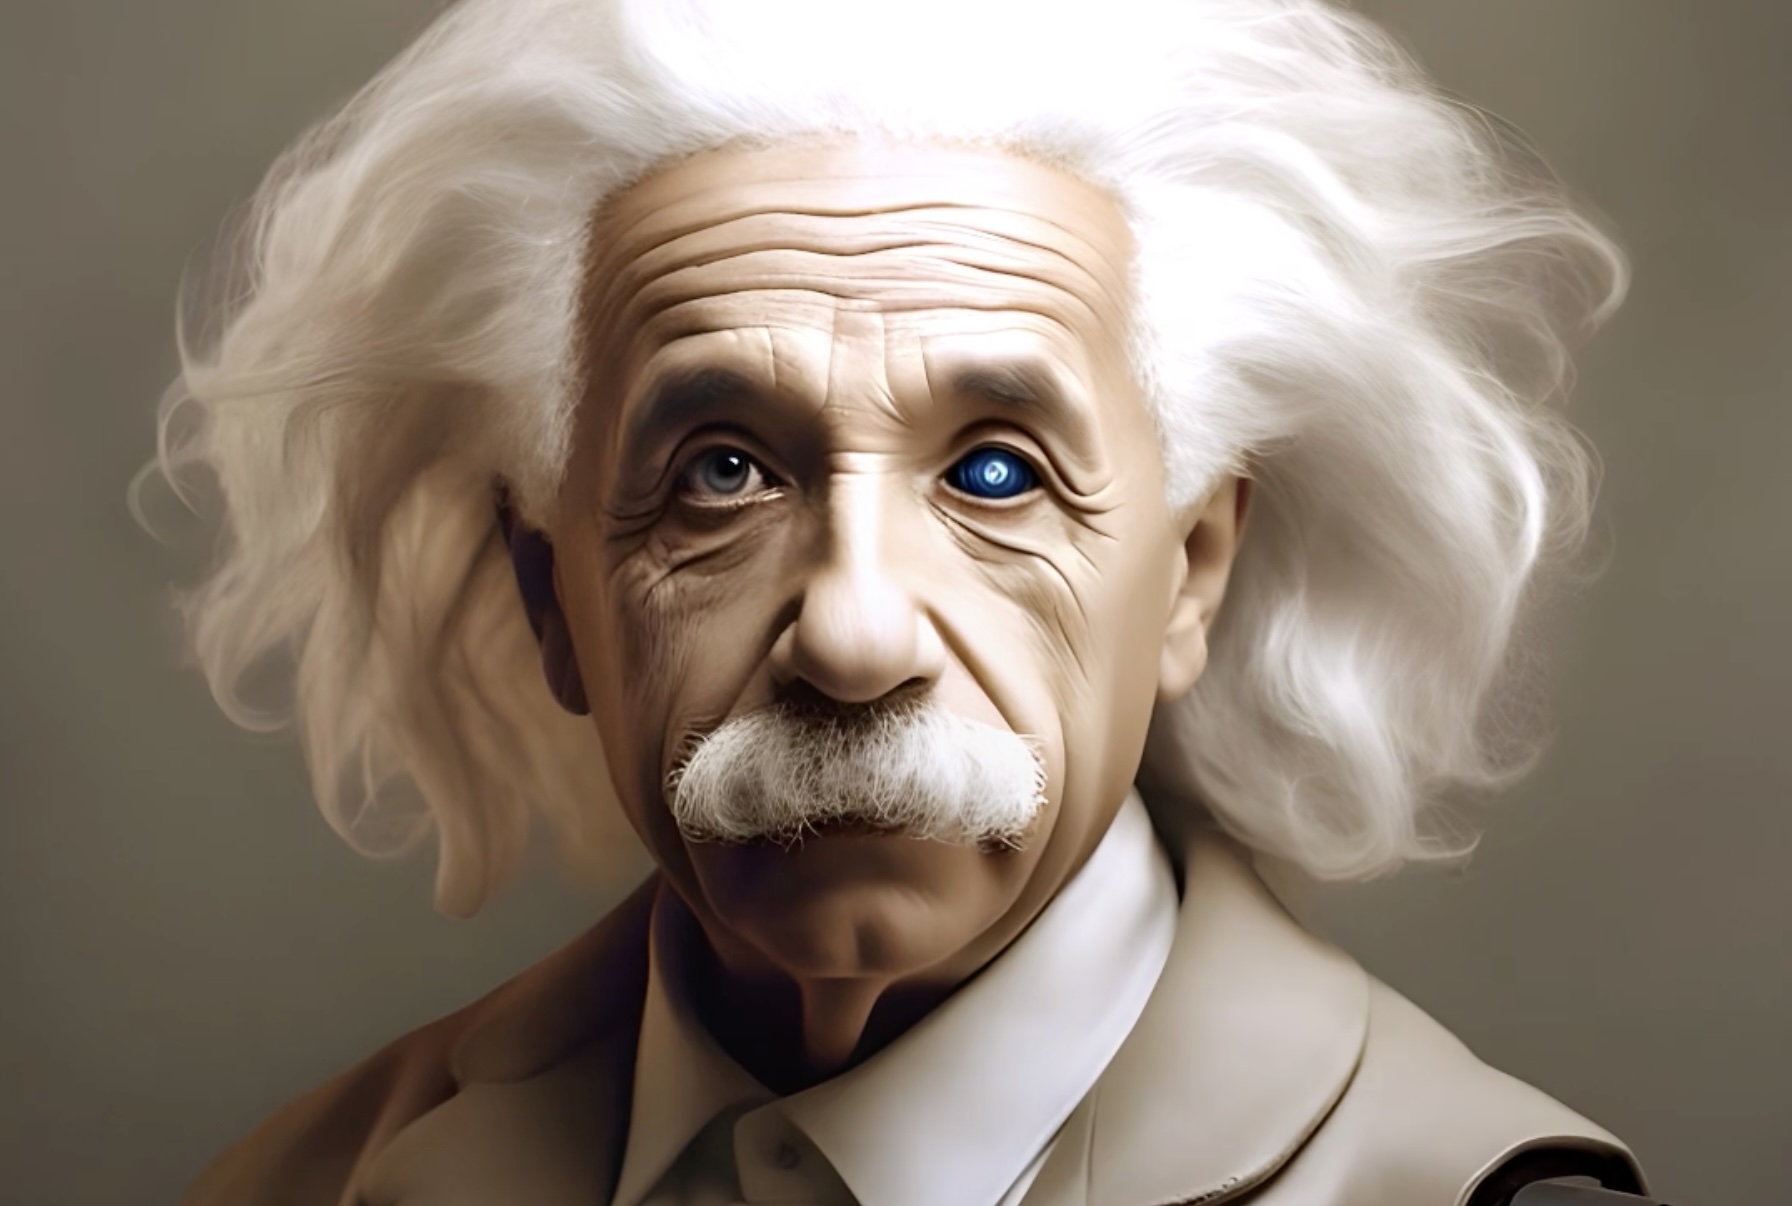 FamousGrey doet een Einstein voor Mediafin 